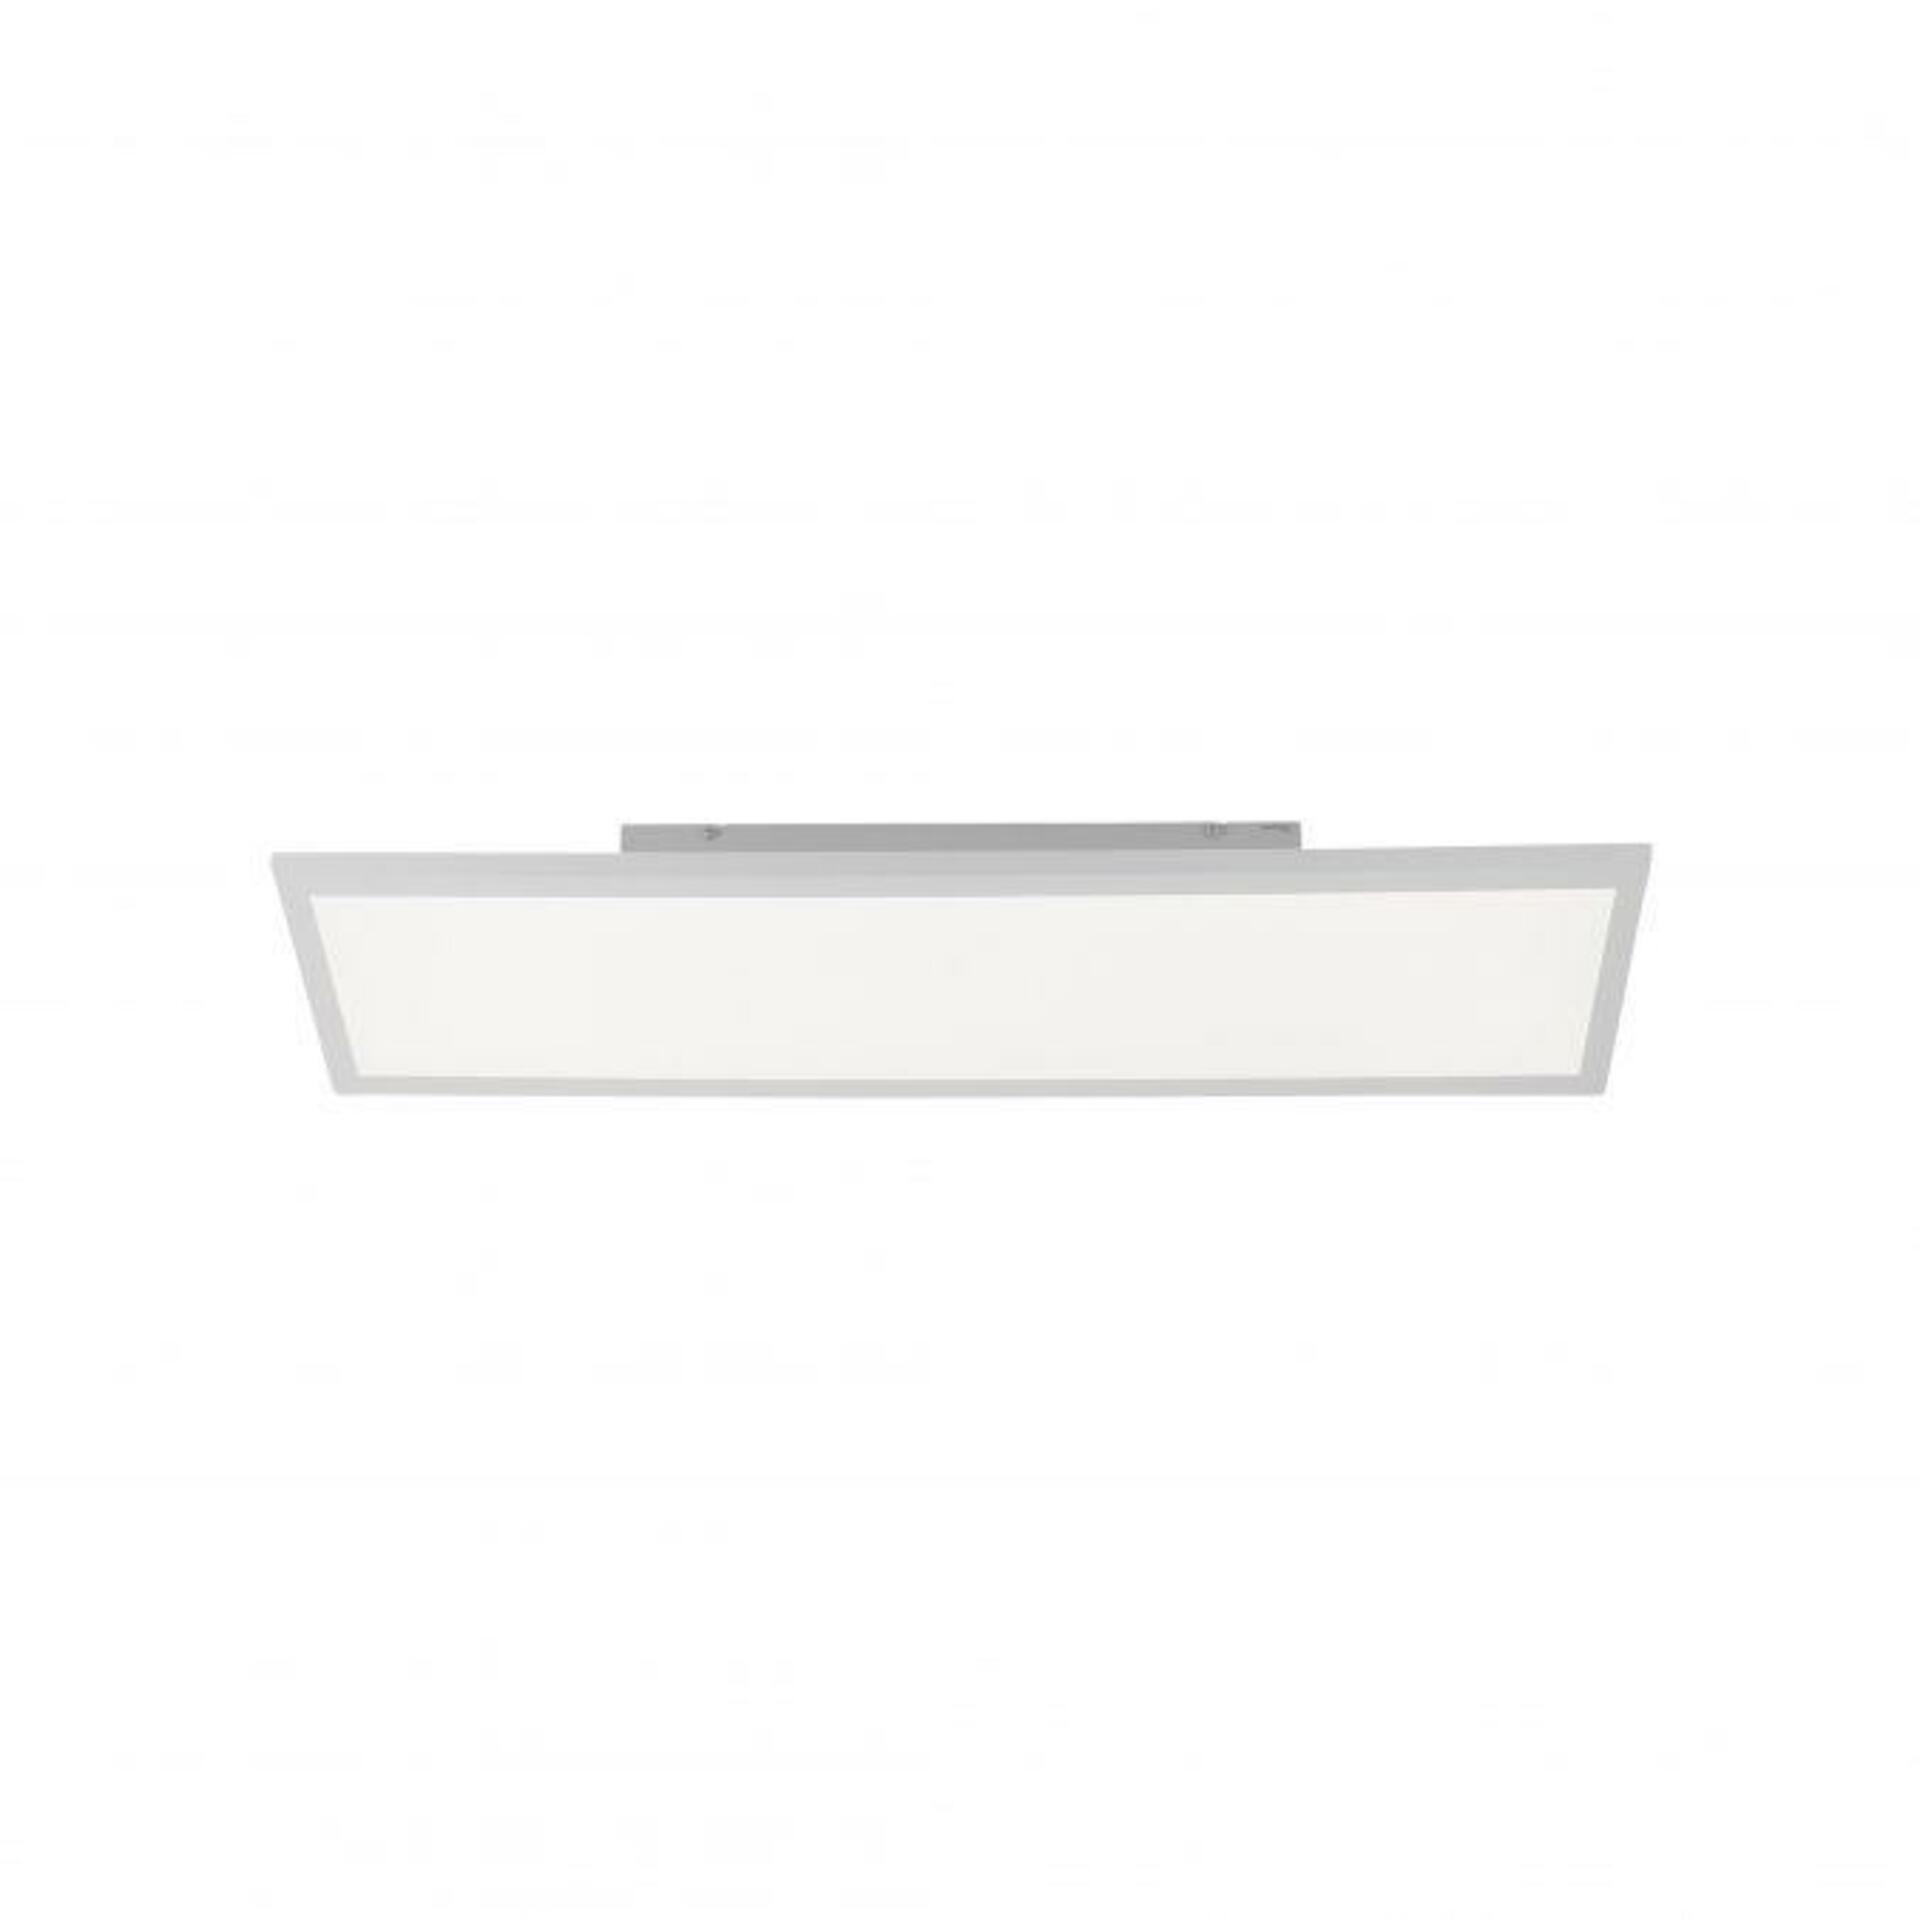 JUST LIGHT LEUCHTEN DIRECT LED stropní svítidlo, panel, bílé, 60x30cm 4000K LD 14474-16